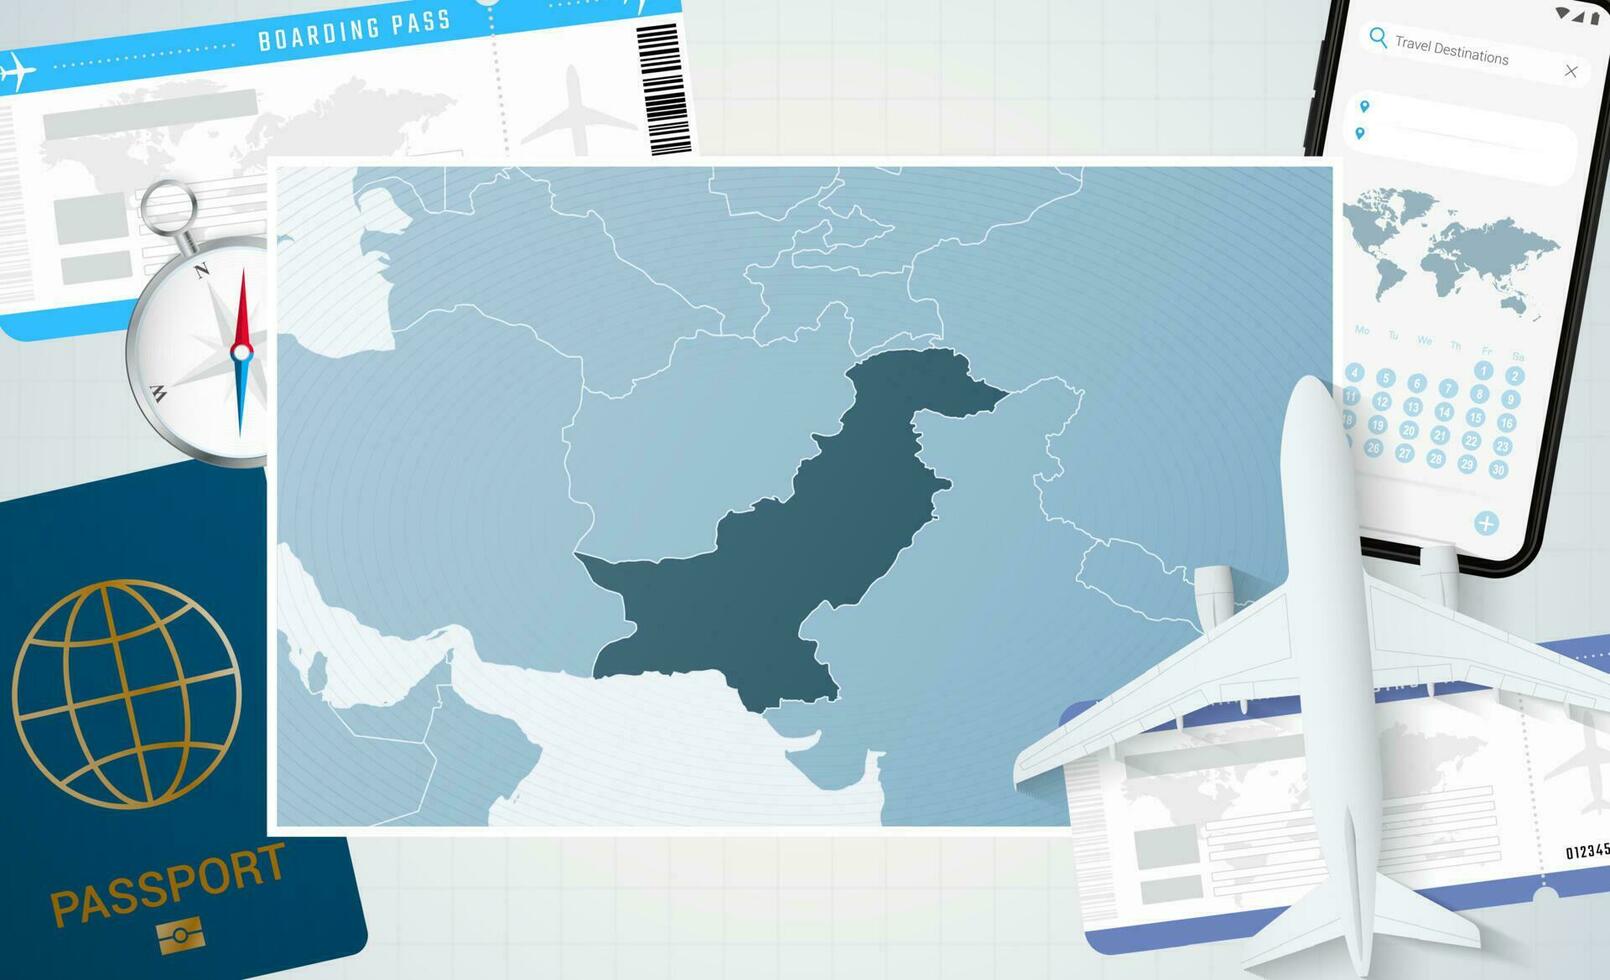 viagem para Paquistão, ilustração com uma mapa do Paquistão. fundo com avião, célula telefone, Passaporte, bússola e bilhetes. vetor